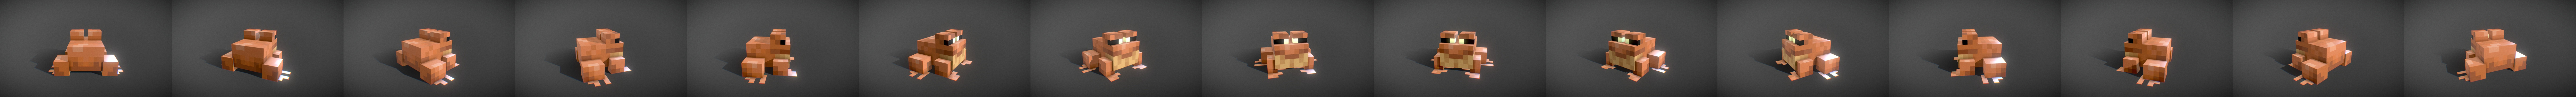 Minecraft Frog - Download Free 3D model by daniil.generalov  (@daniil.generalov) [d038abf]